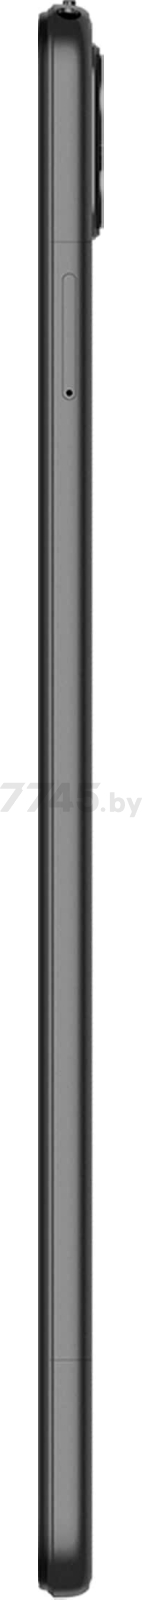 Планшет DOOGEE T10S 6GB/128GB LTE Gray (T10S_Gray) - Фото 9